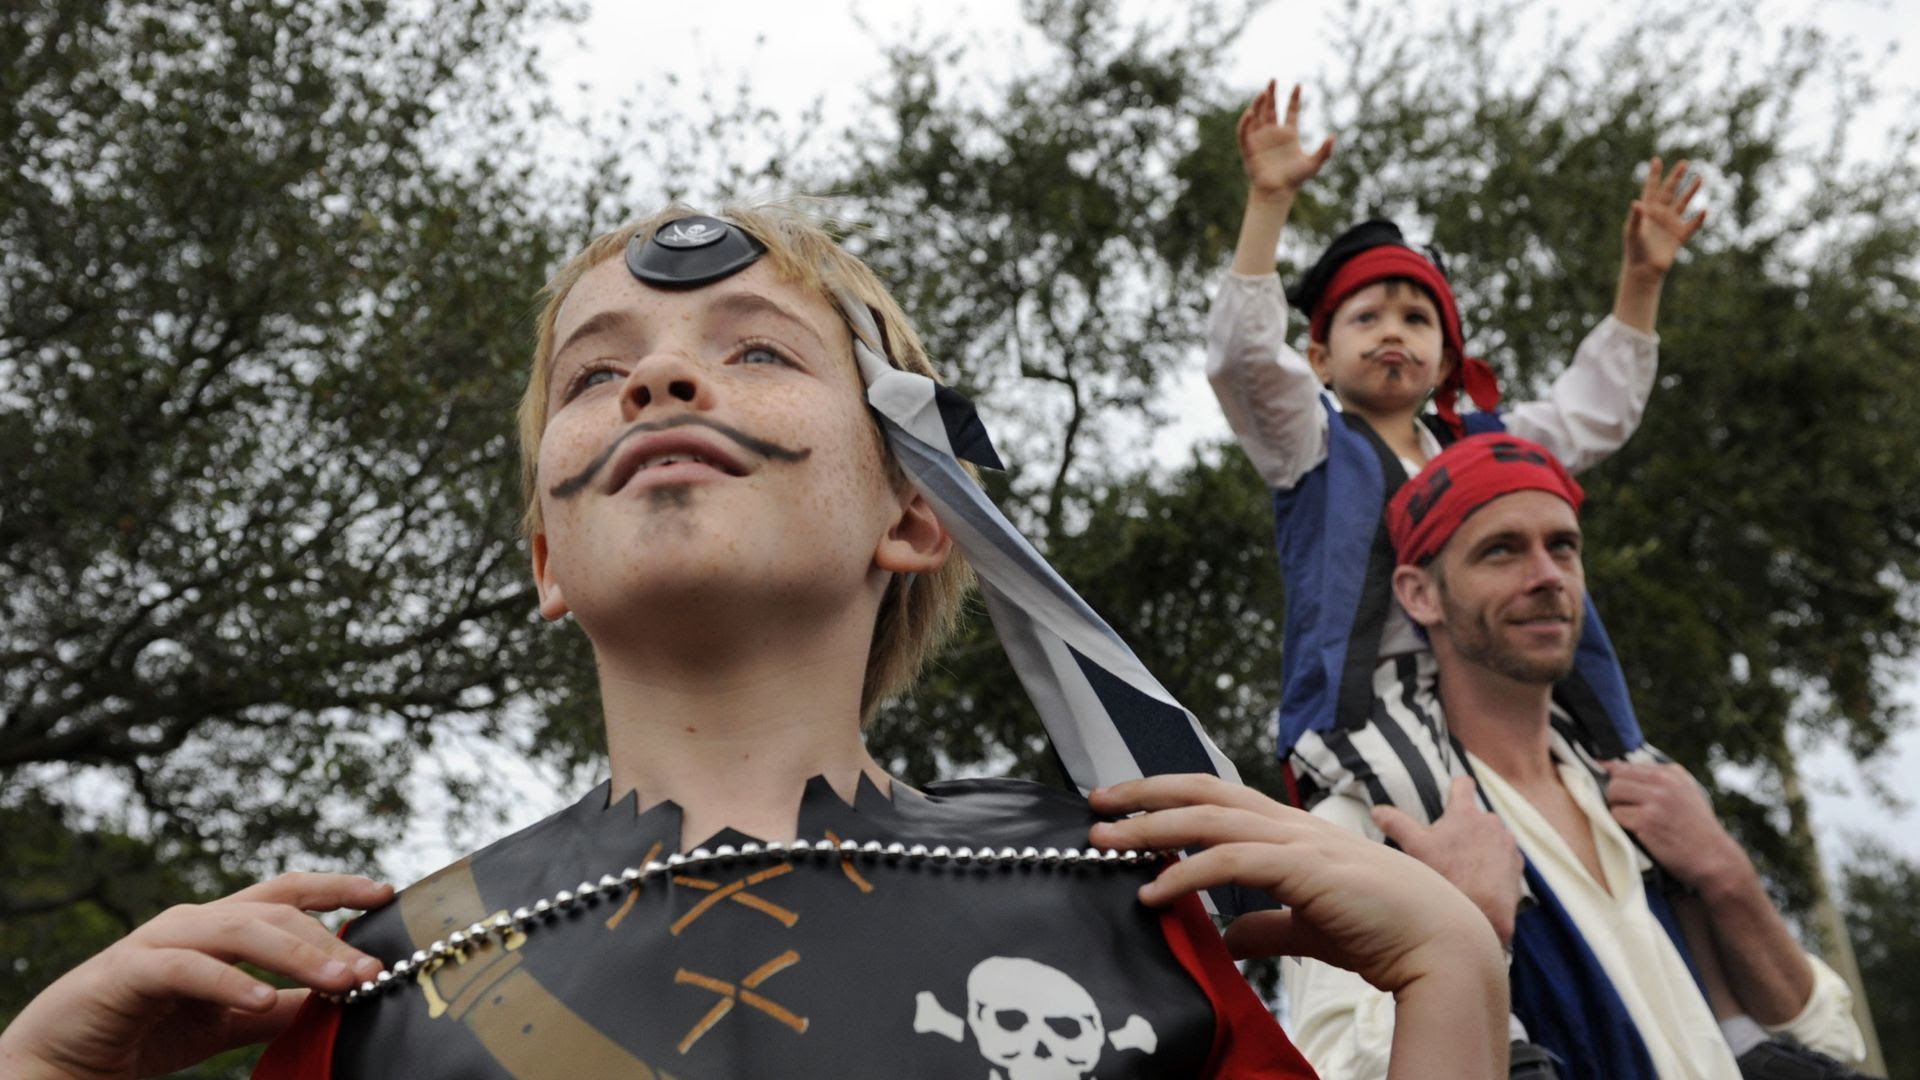 The Pirate Festival